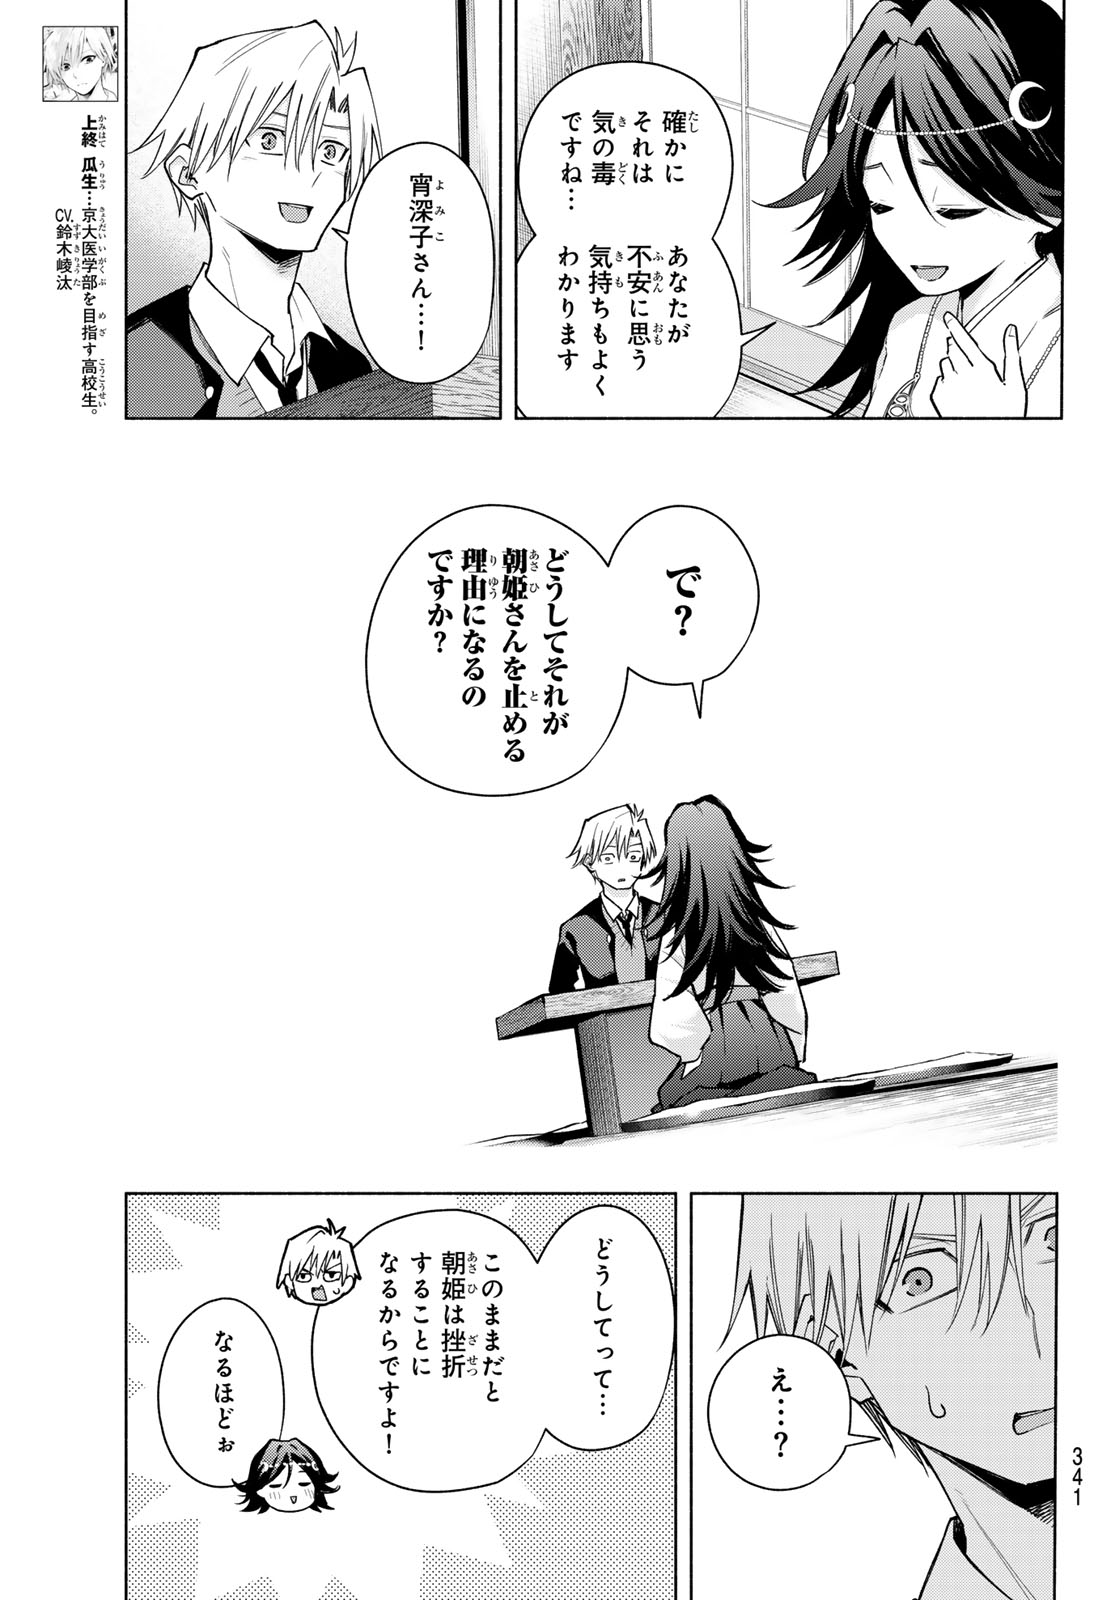 Amagami-san Chi no Enmusubi - Chapter 136 - Page 3